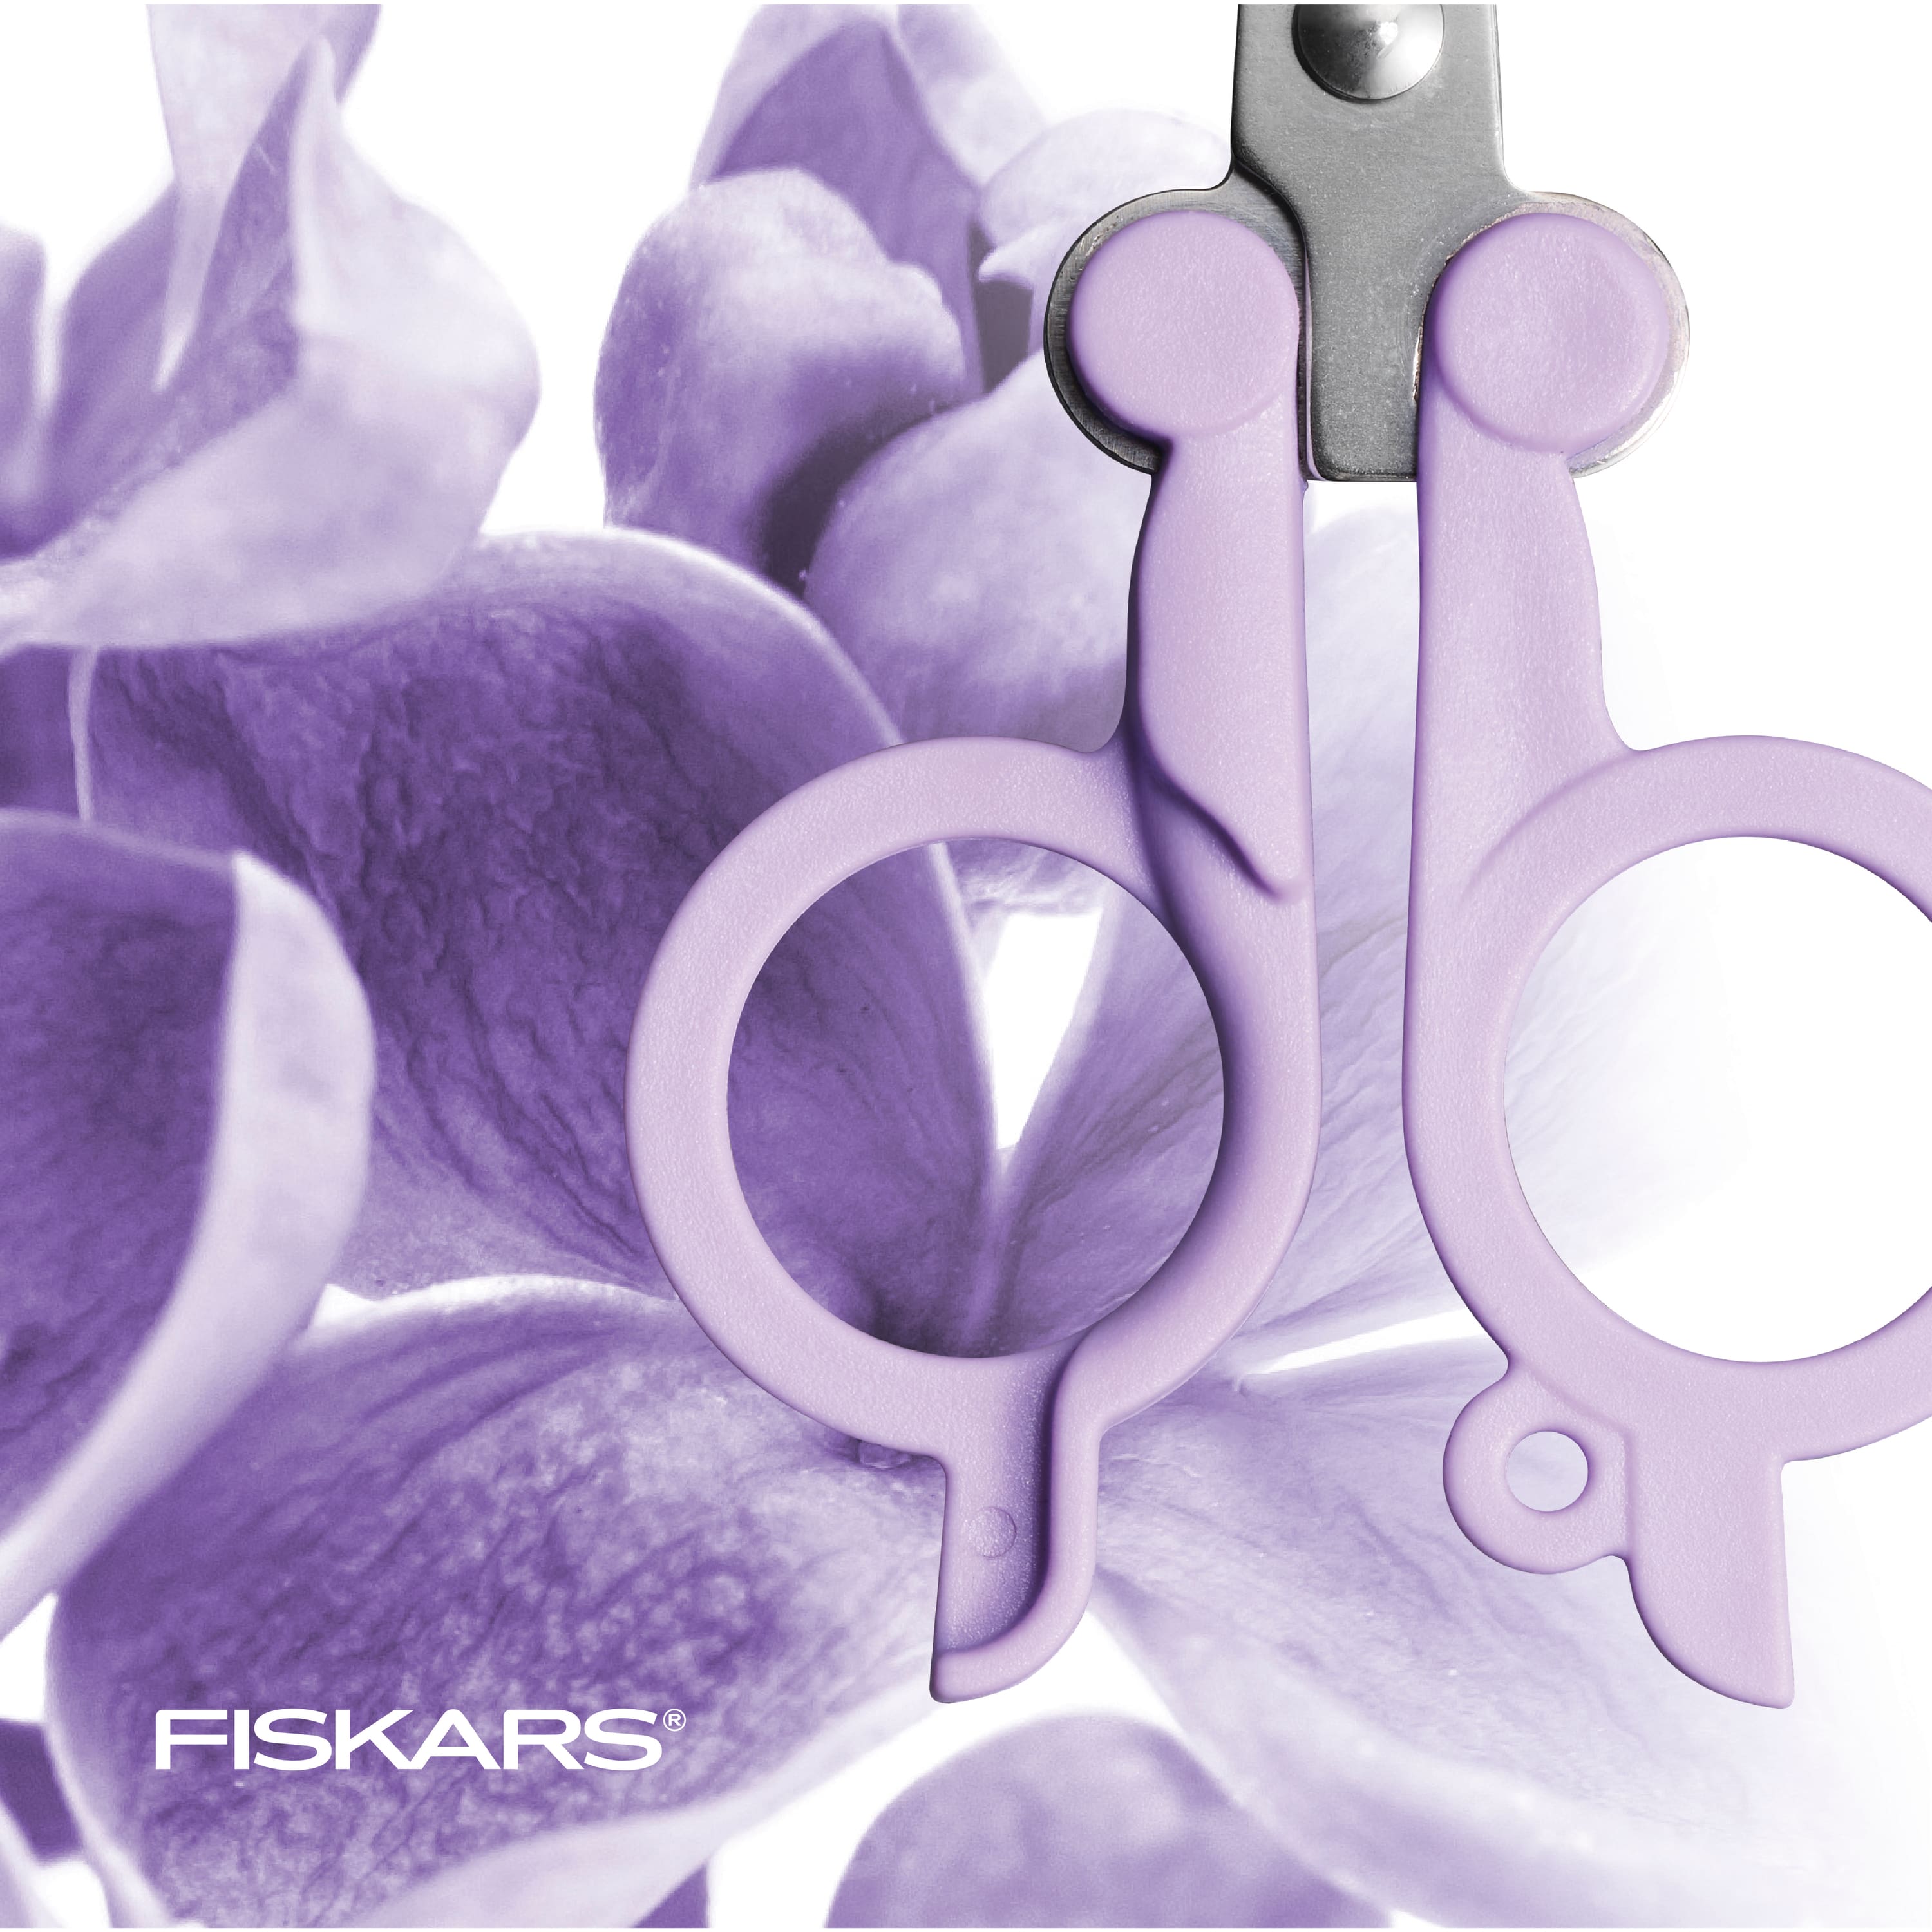 Milan Pastel Basic Scissors - Lilac, 5-1/4